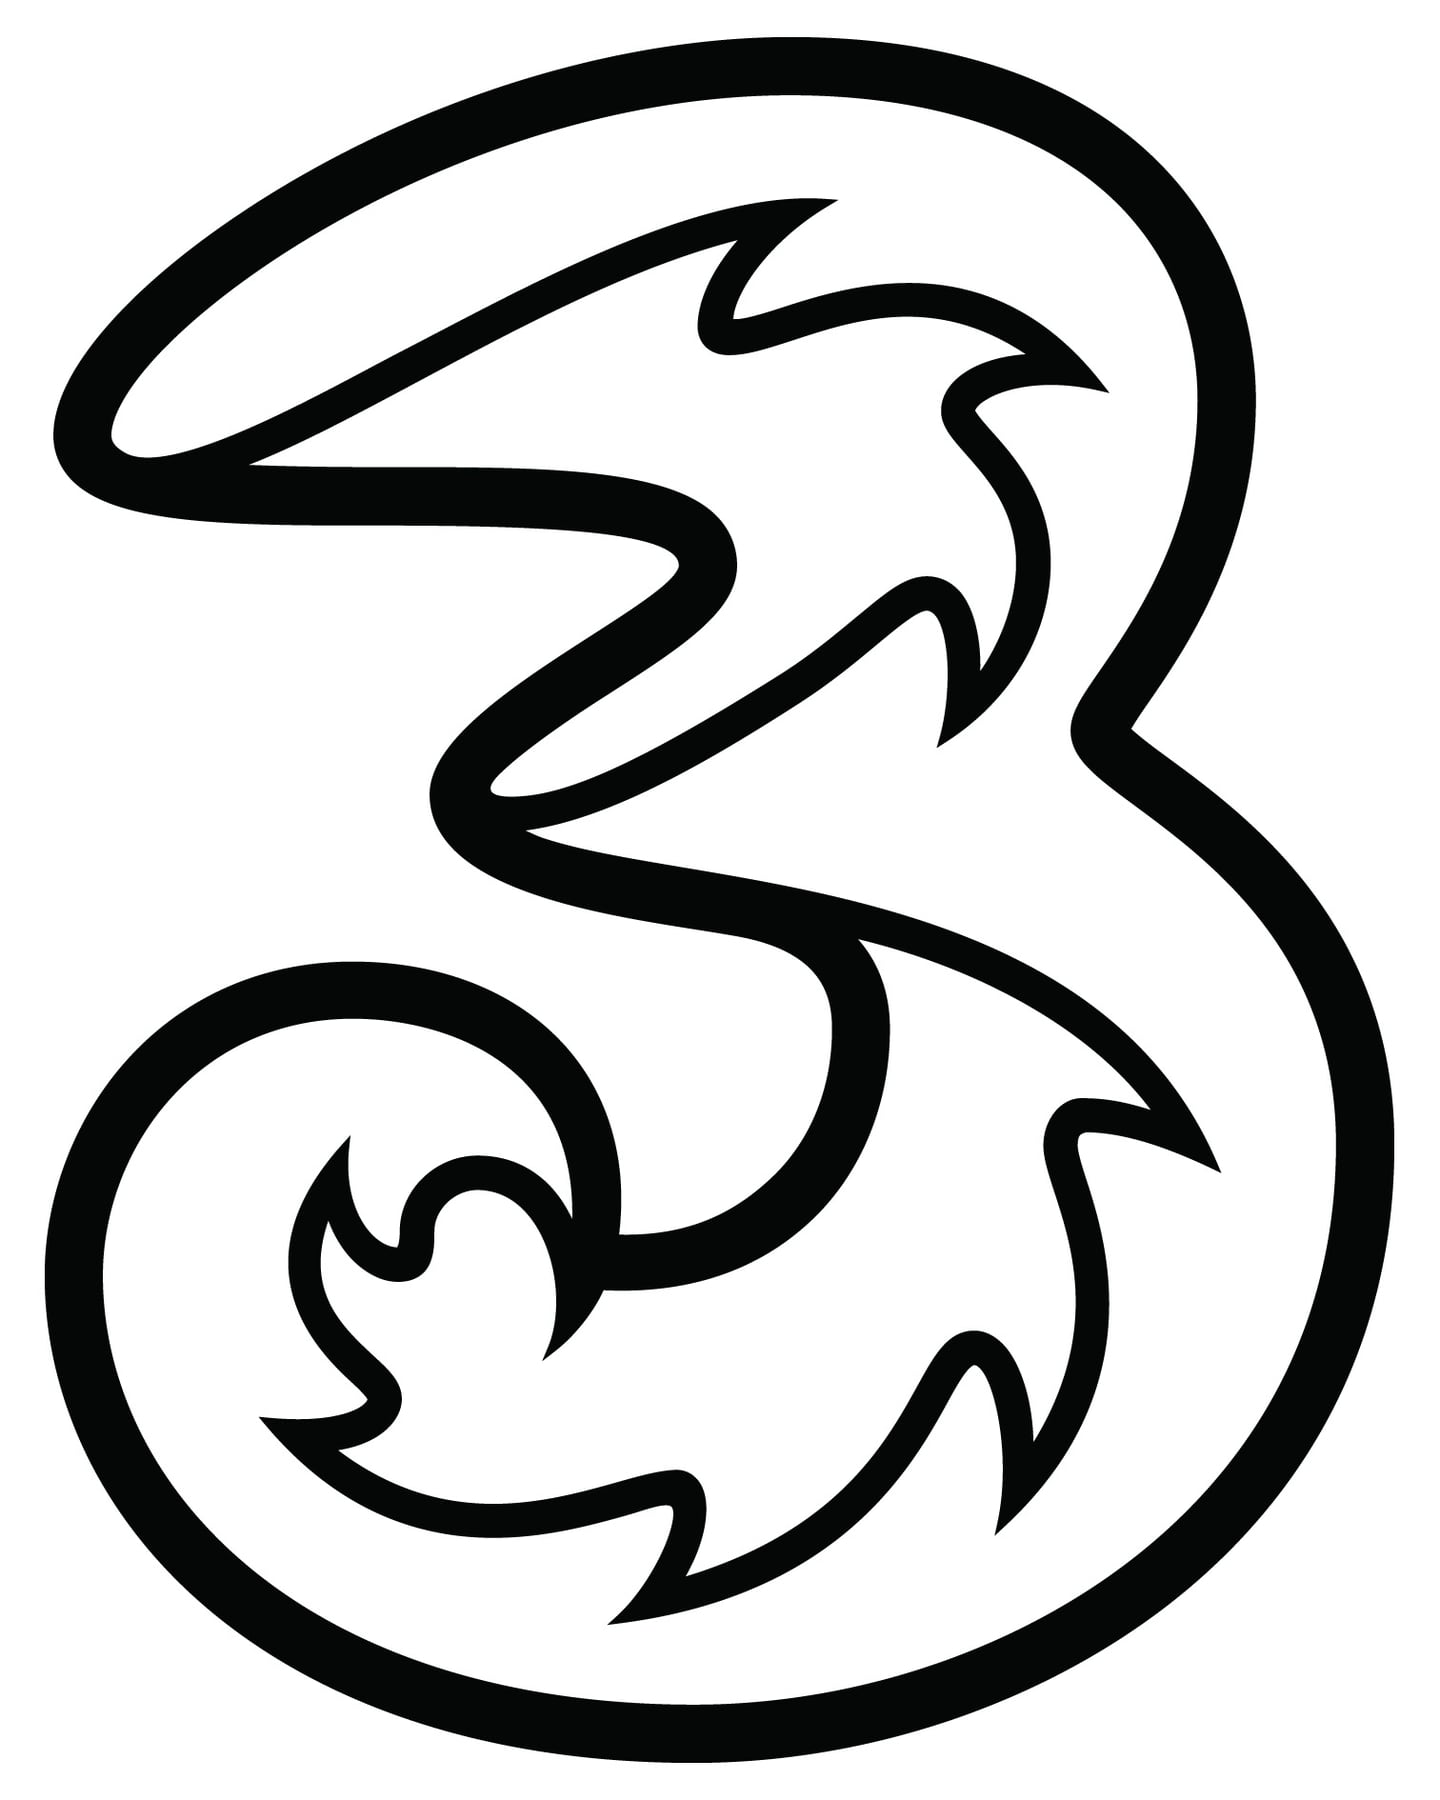 The Logo for Three Ireland